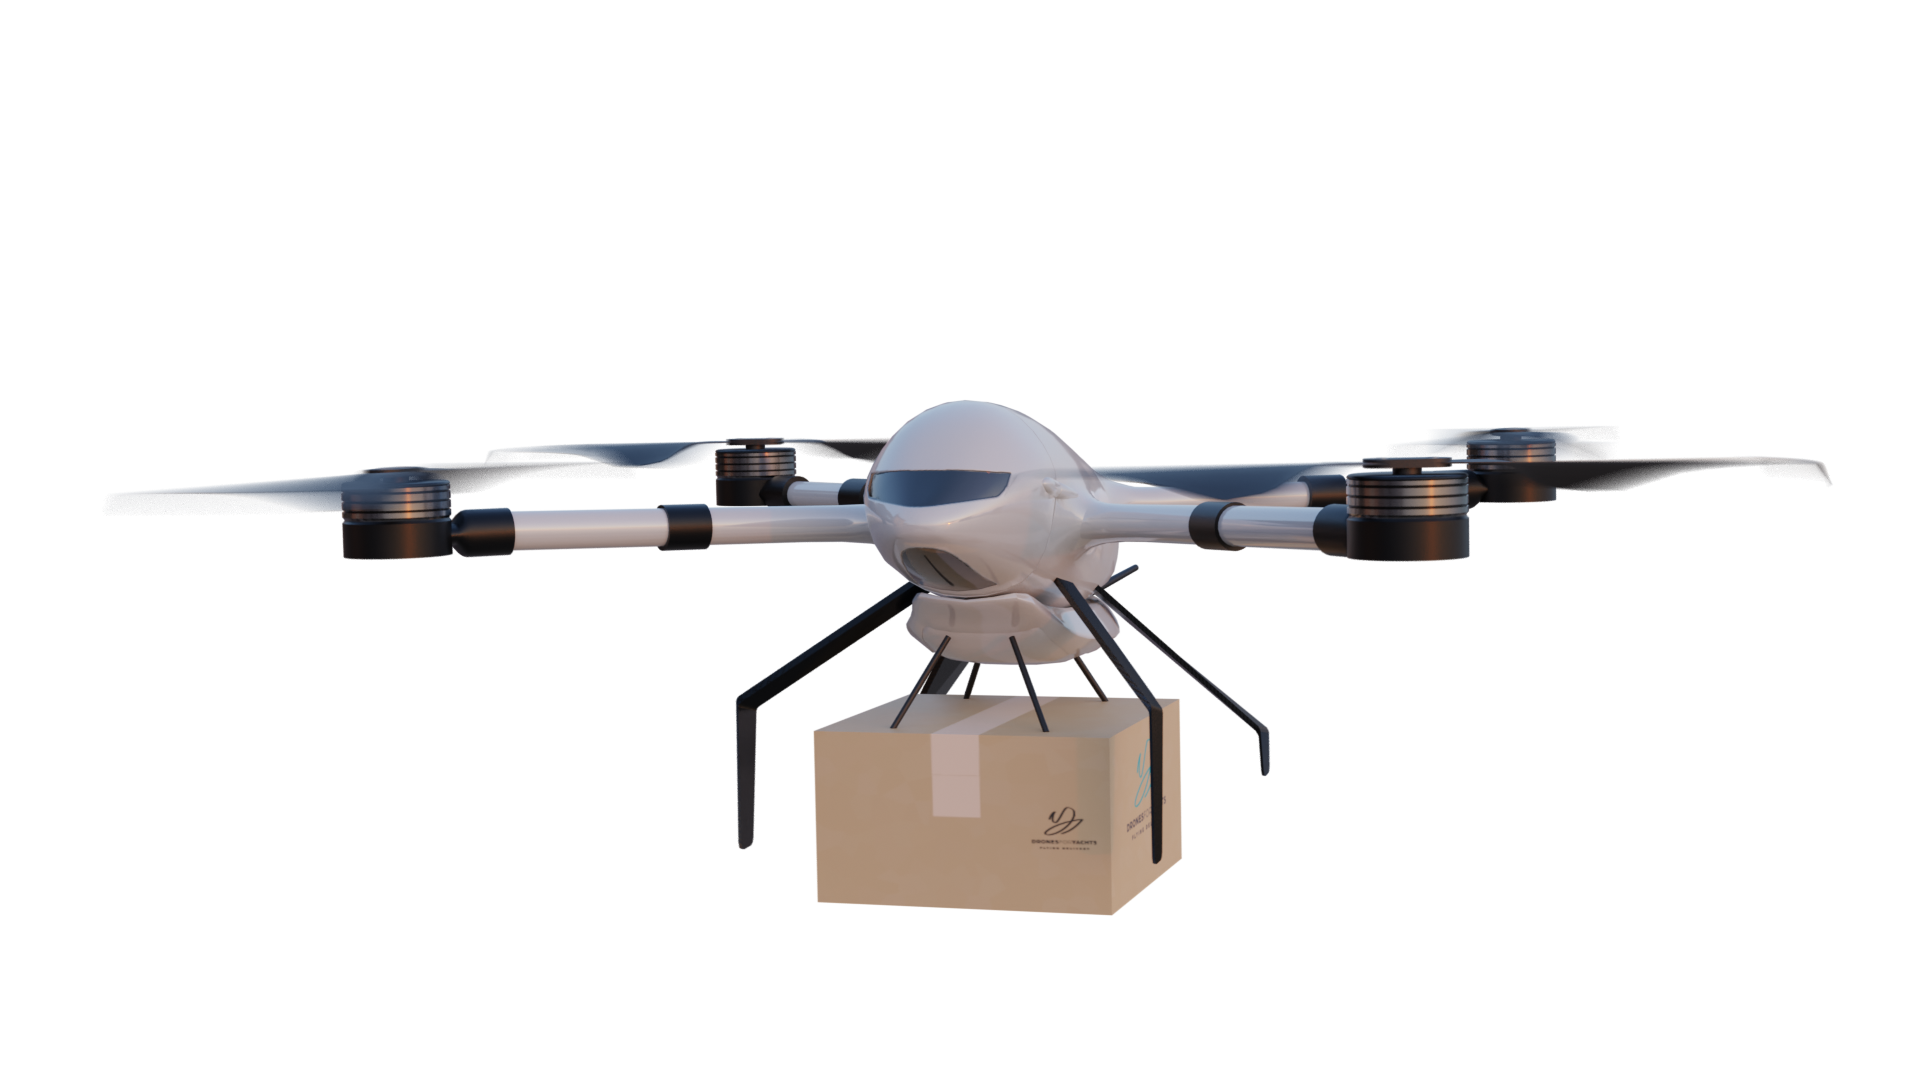 El dron de reparto Beluga transporta un paquete Drones for Yachts